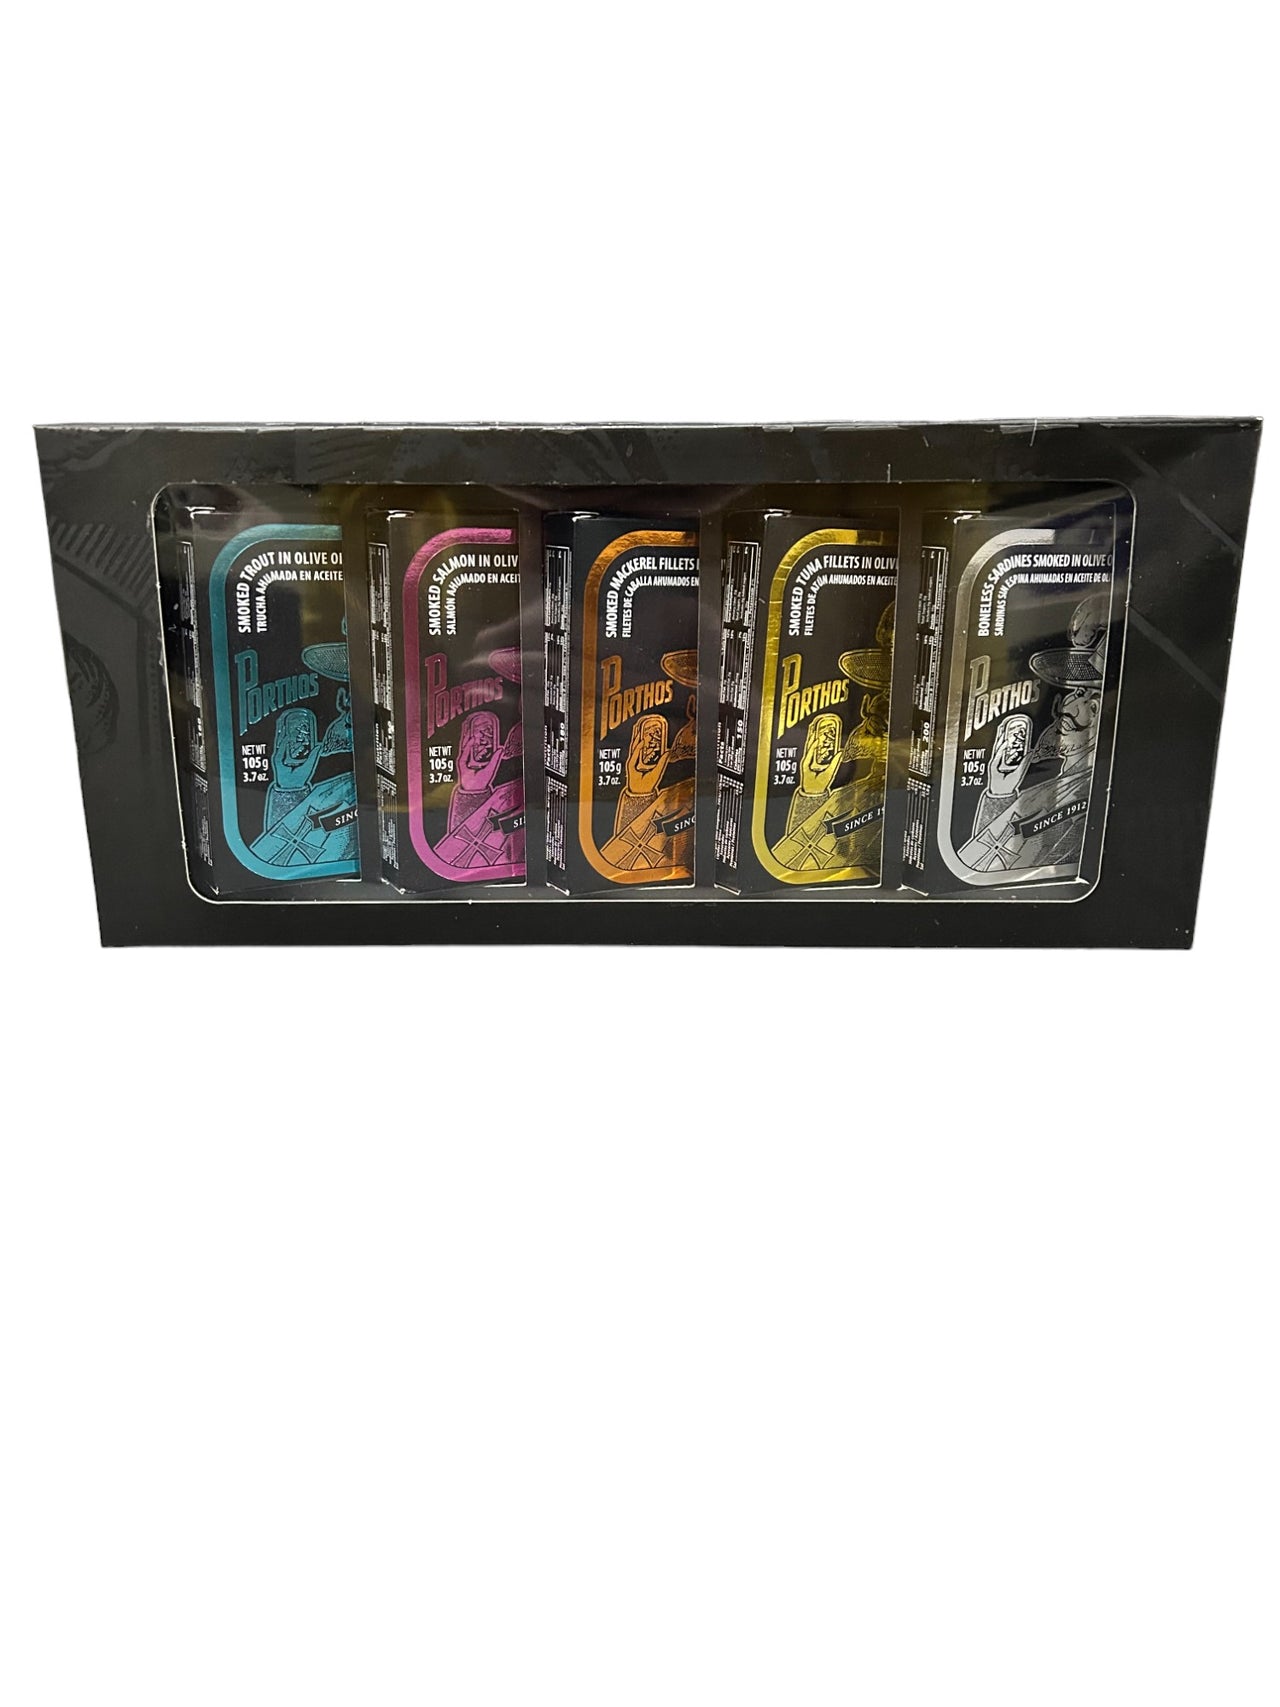 Porthos Smoked Gift Box Variety Pack - 5 Pack